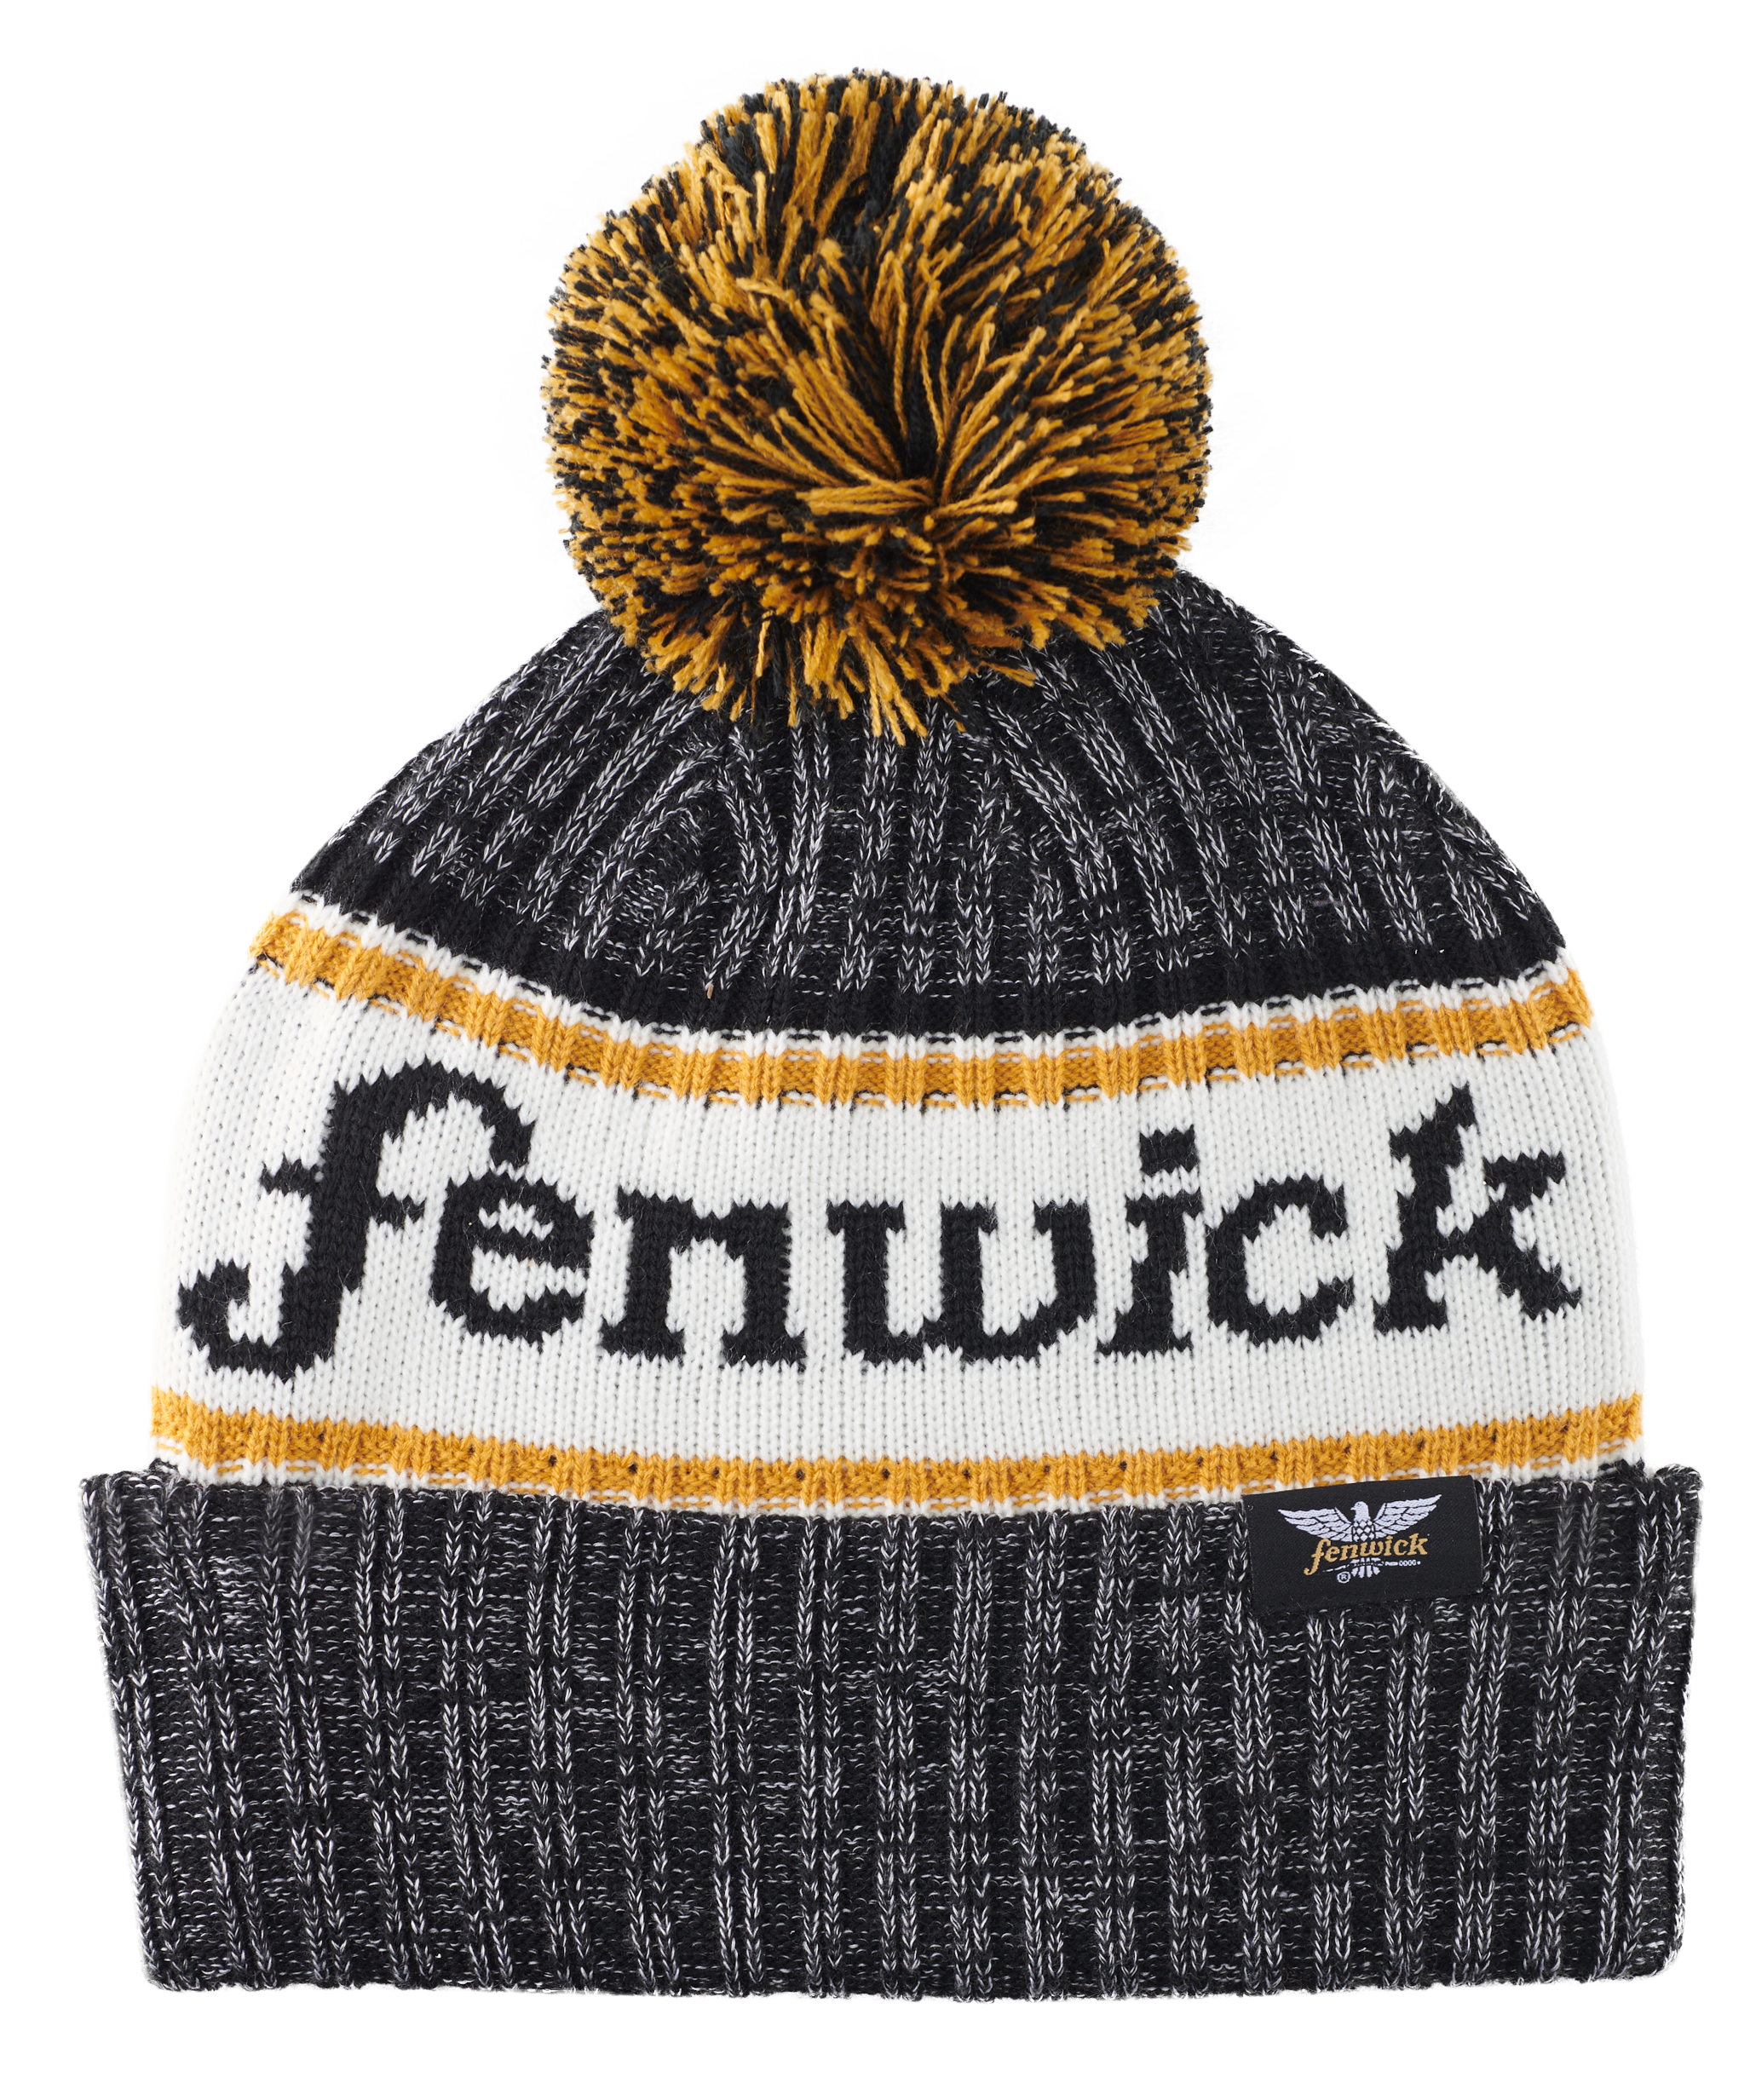 Fenwick Classic Rib Knit Beanie with Pom-Pom Black - Size - One Size